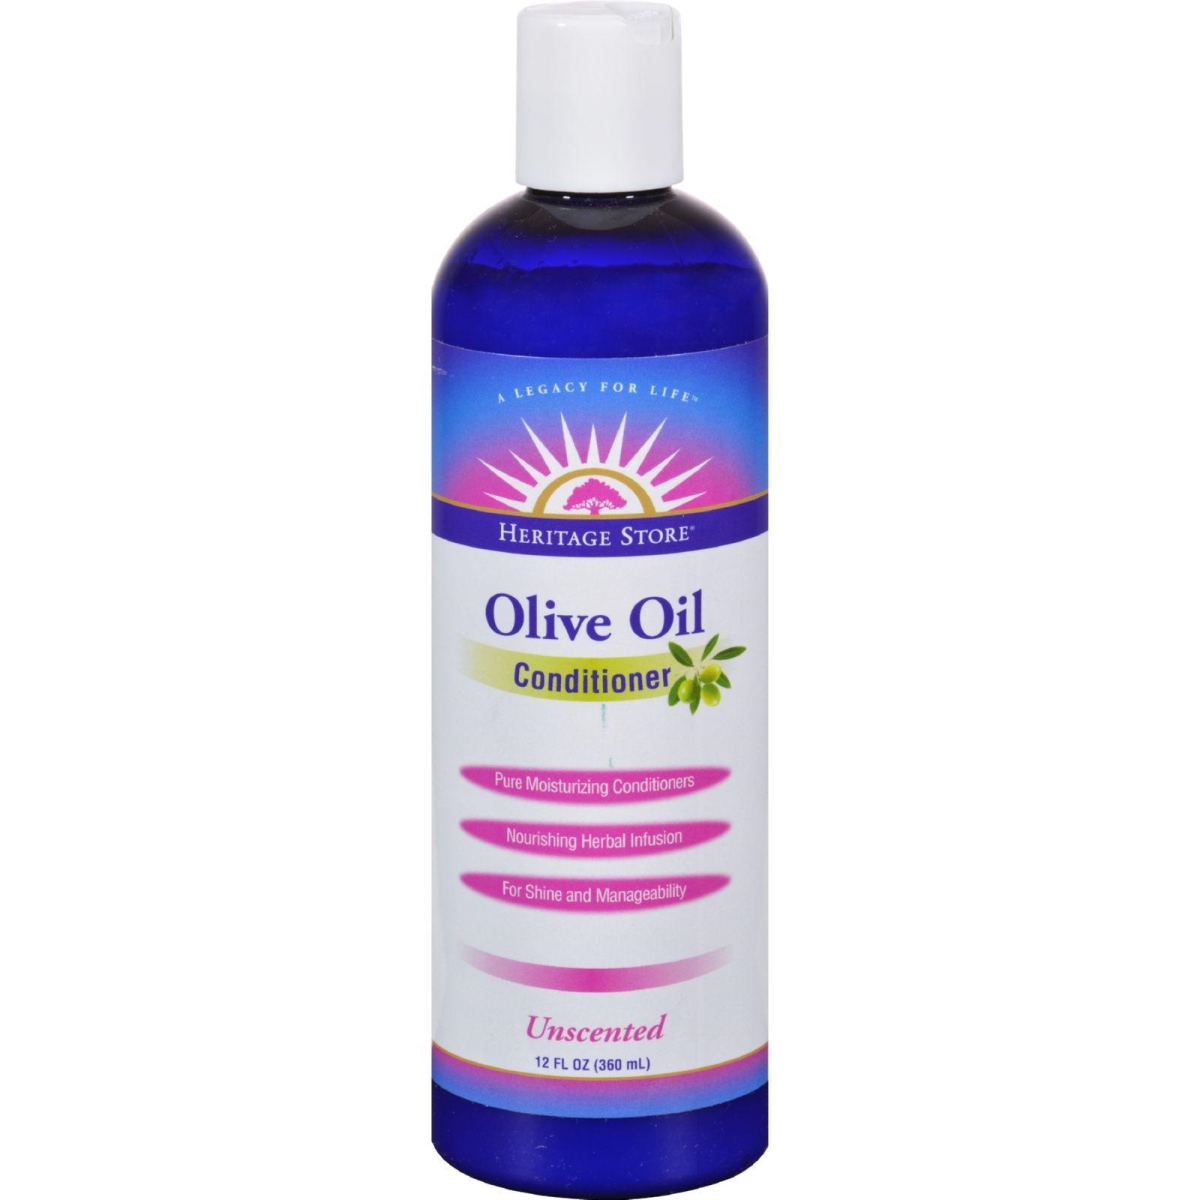 Hg1163997 12 Fl Oz Olive Oil Conditioner - Unscented